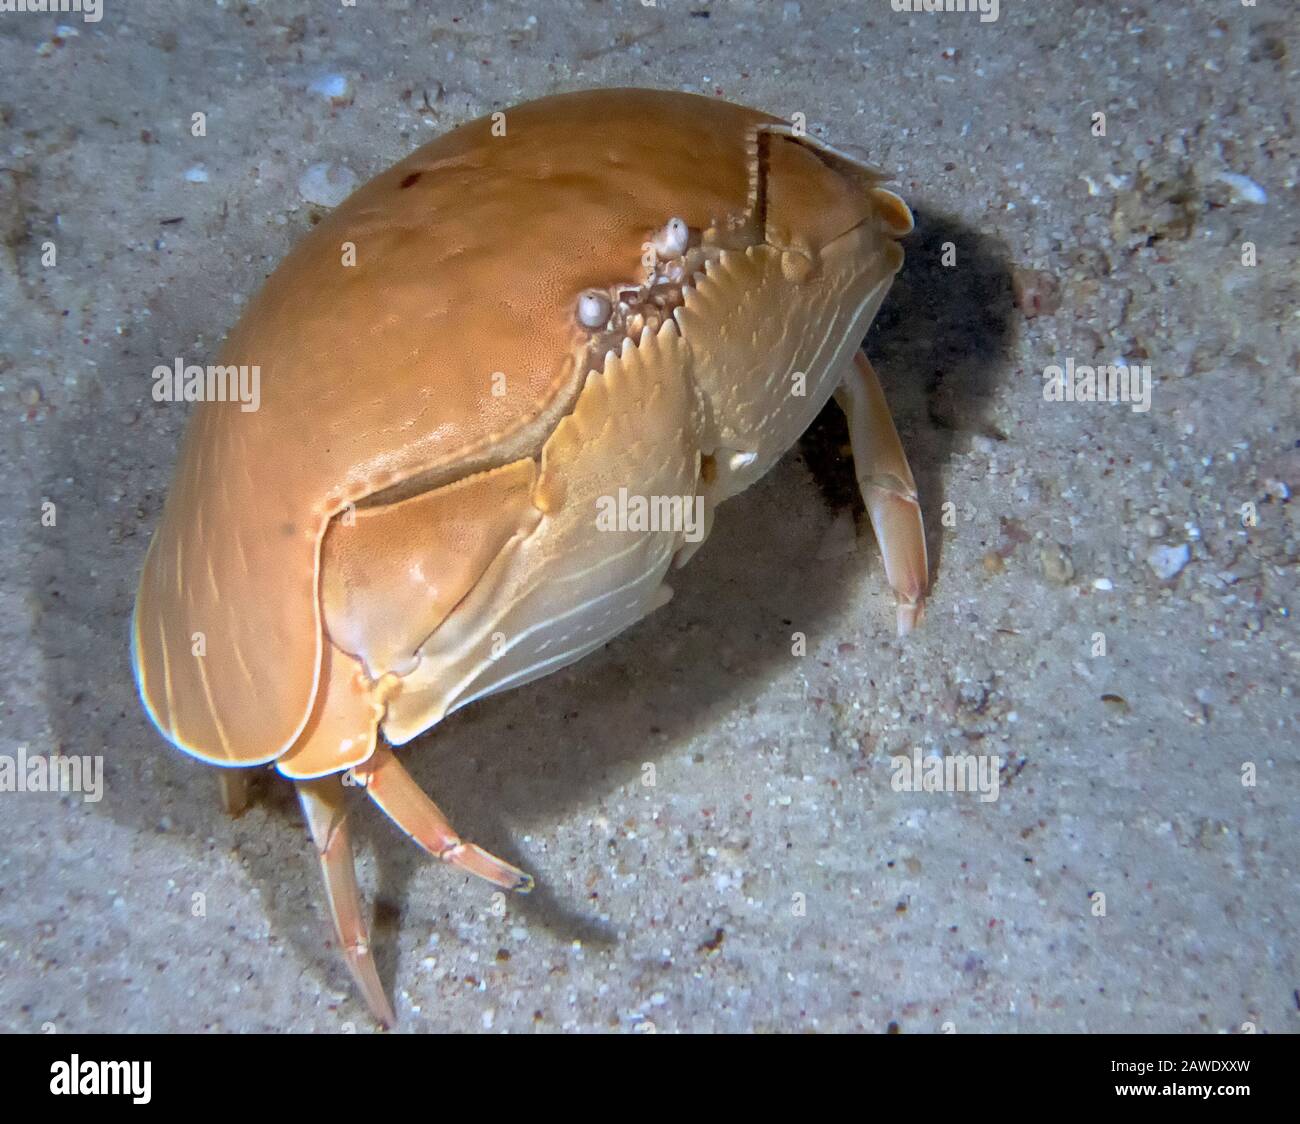 Smooth Box Crab (Calappa calappa) Stock Photo